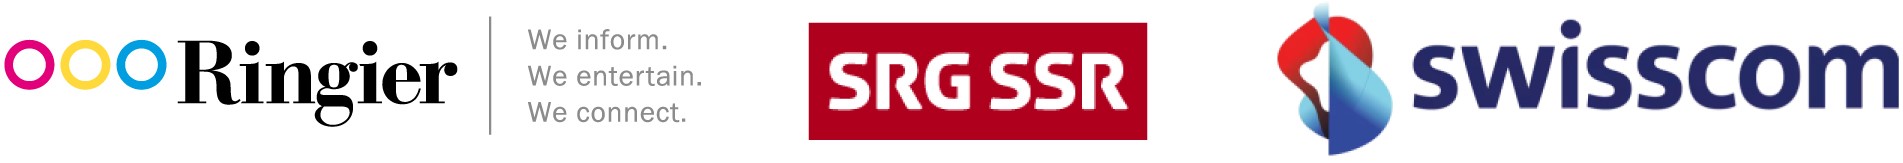 Ringier, SRG und Swisscom gegen Google und Co.